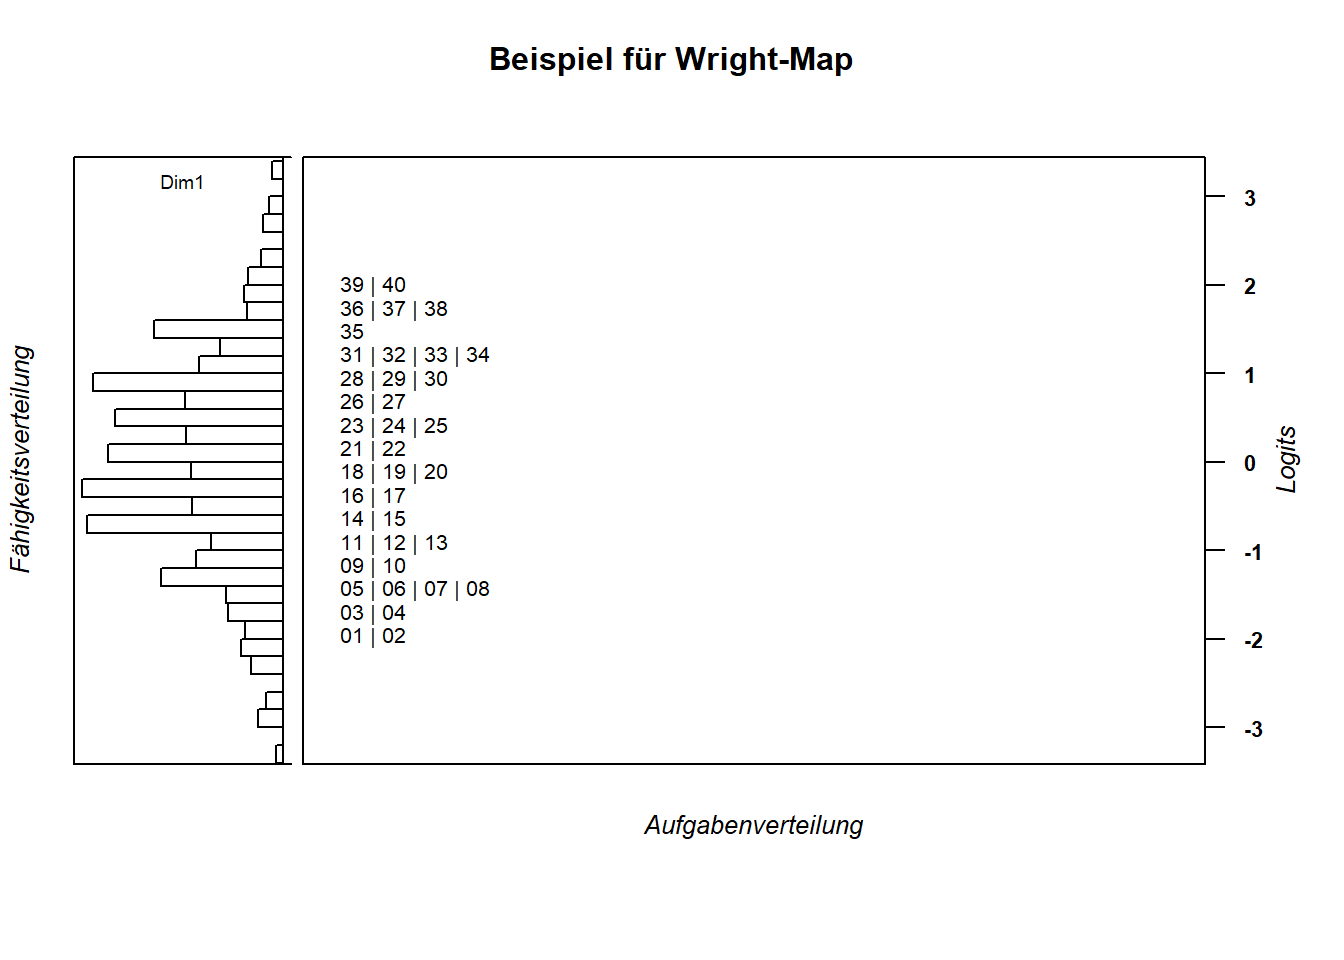 Eine Alternative Darstellung der Wright-Map.